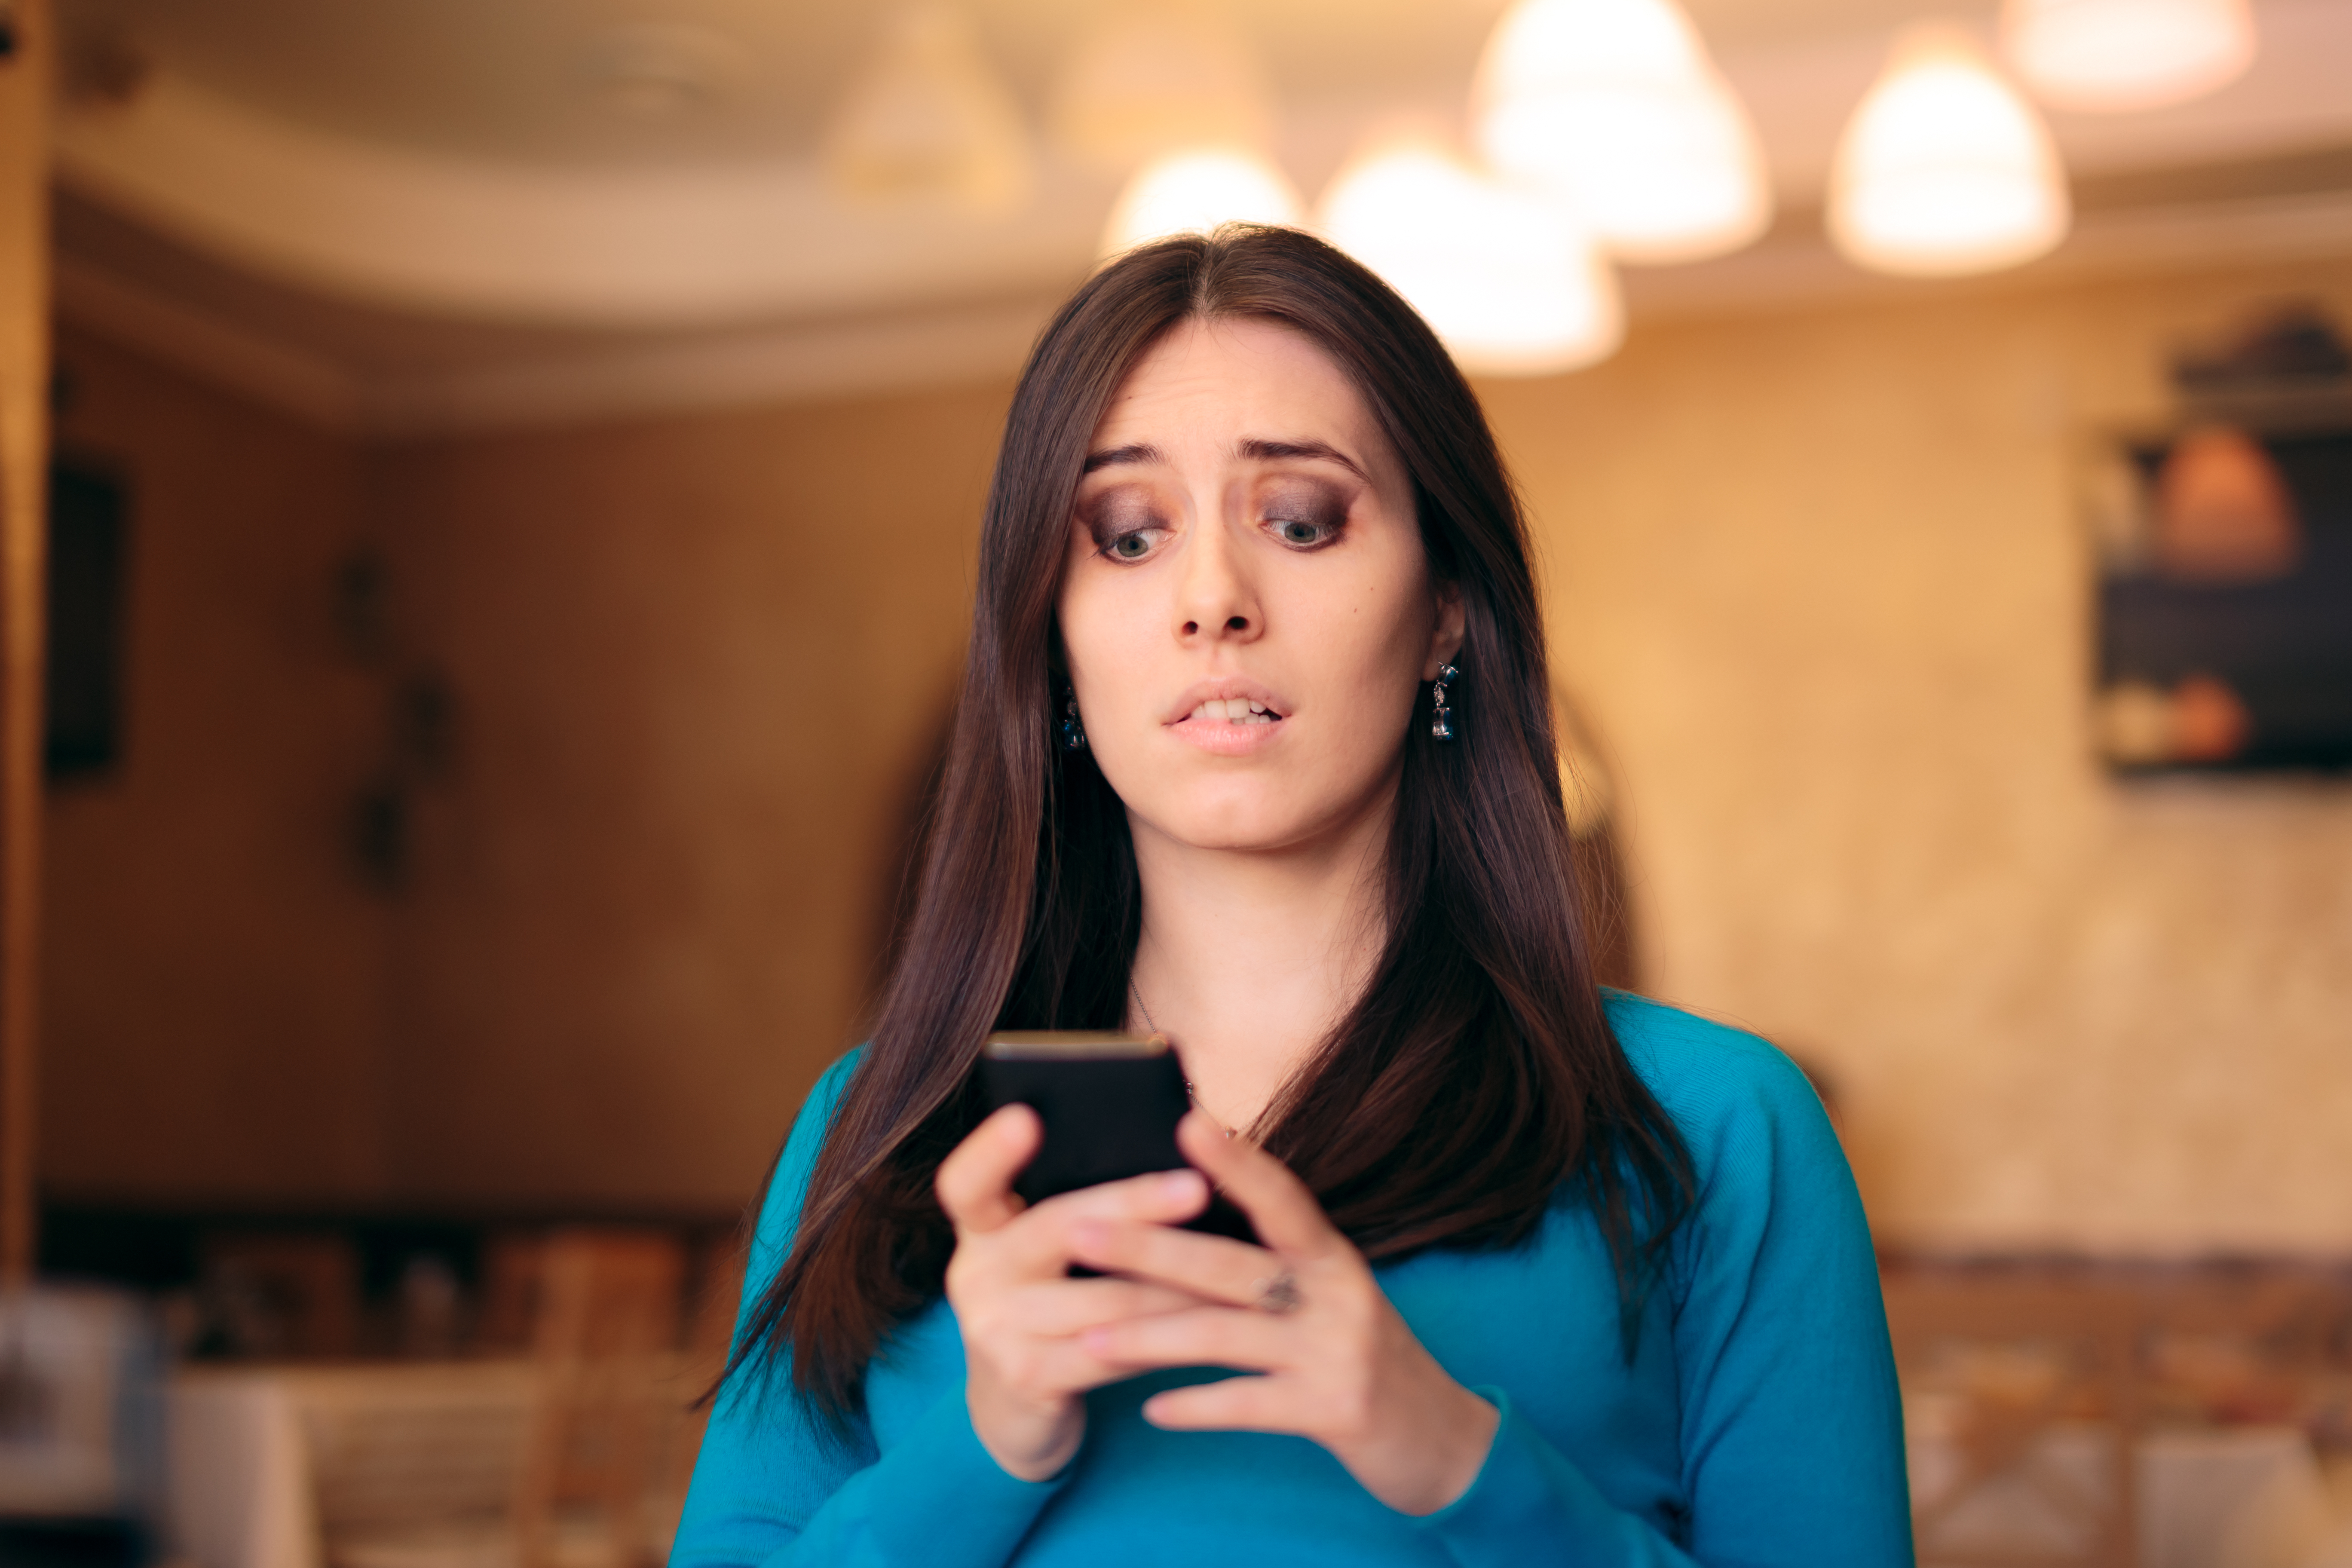 Une femme à l'air choqué alors qu'elle est sur son téléphone | Source : Shutterstock